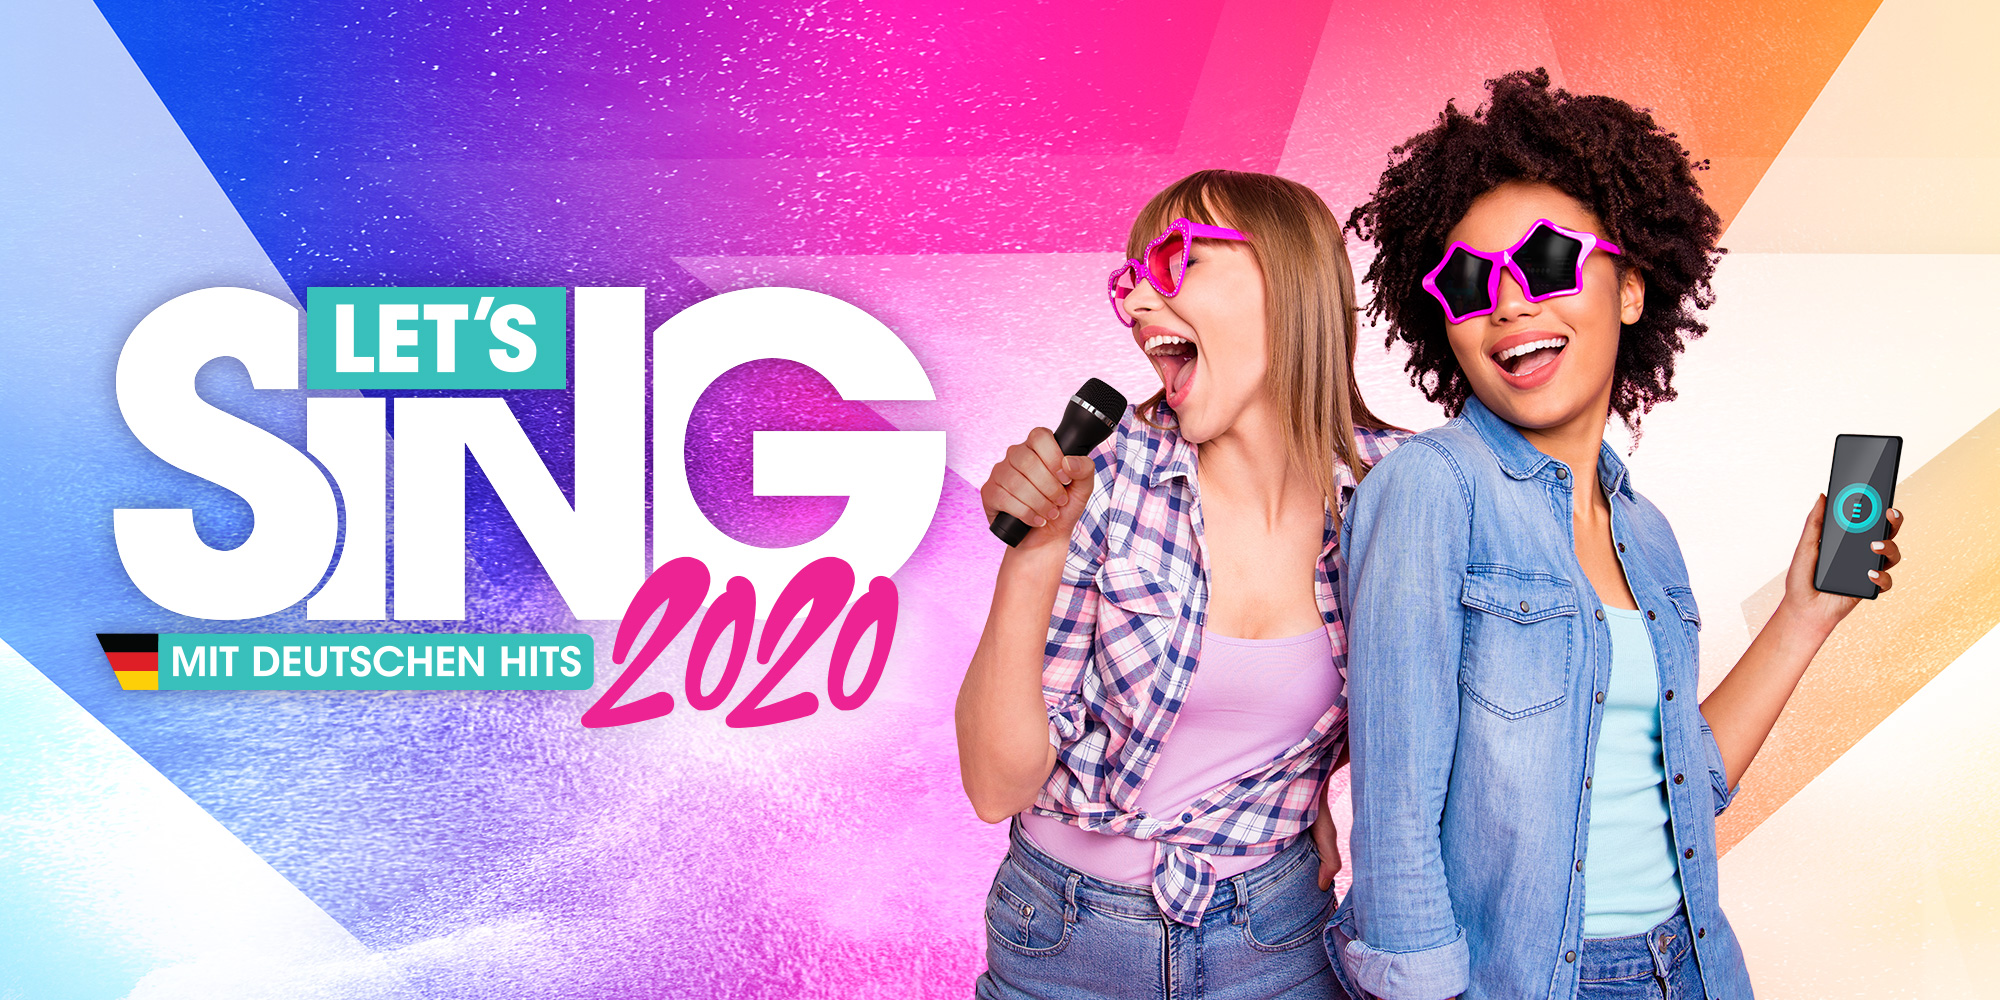 Let S Sing 2020 Mit Deutschen Hits Nintendo Switch Spiele Nintendo